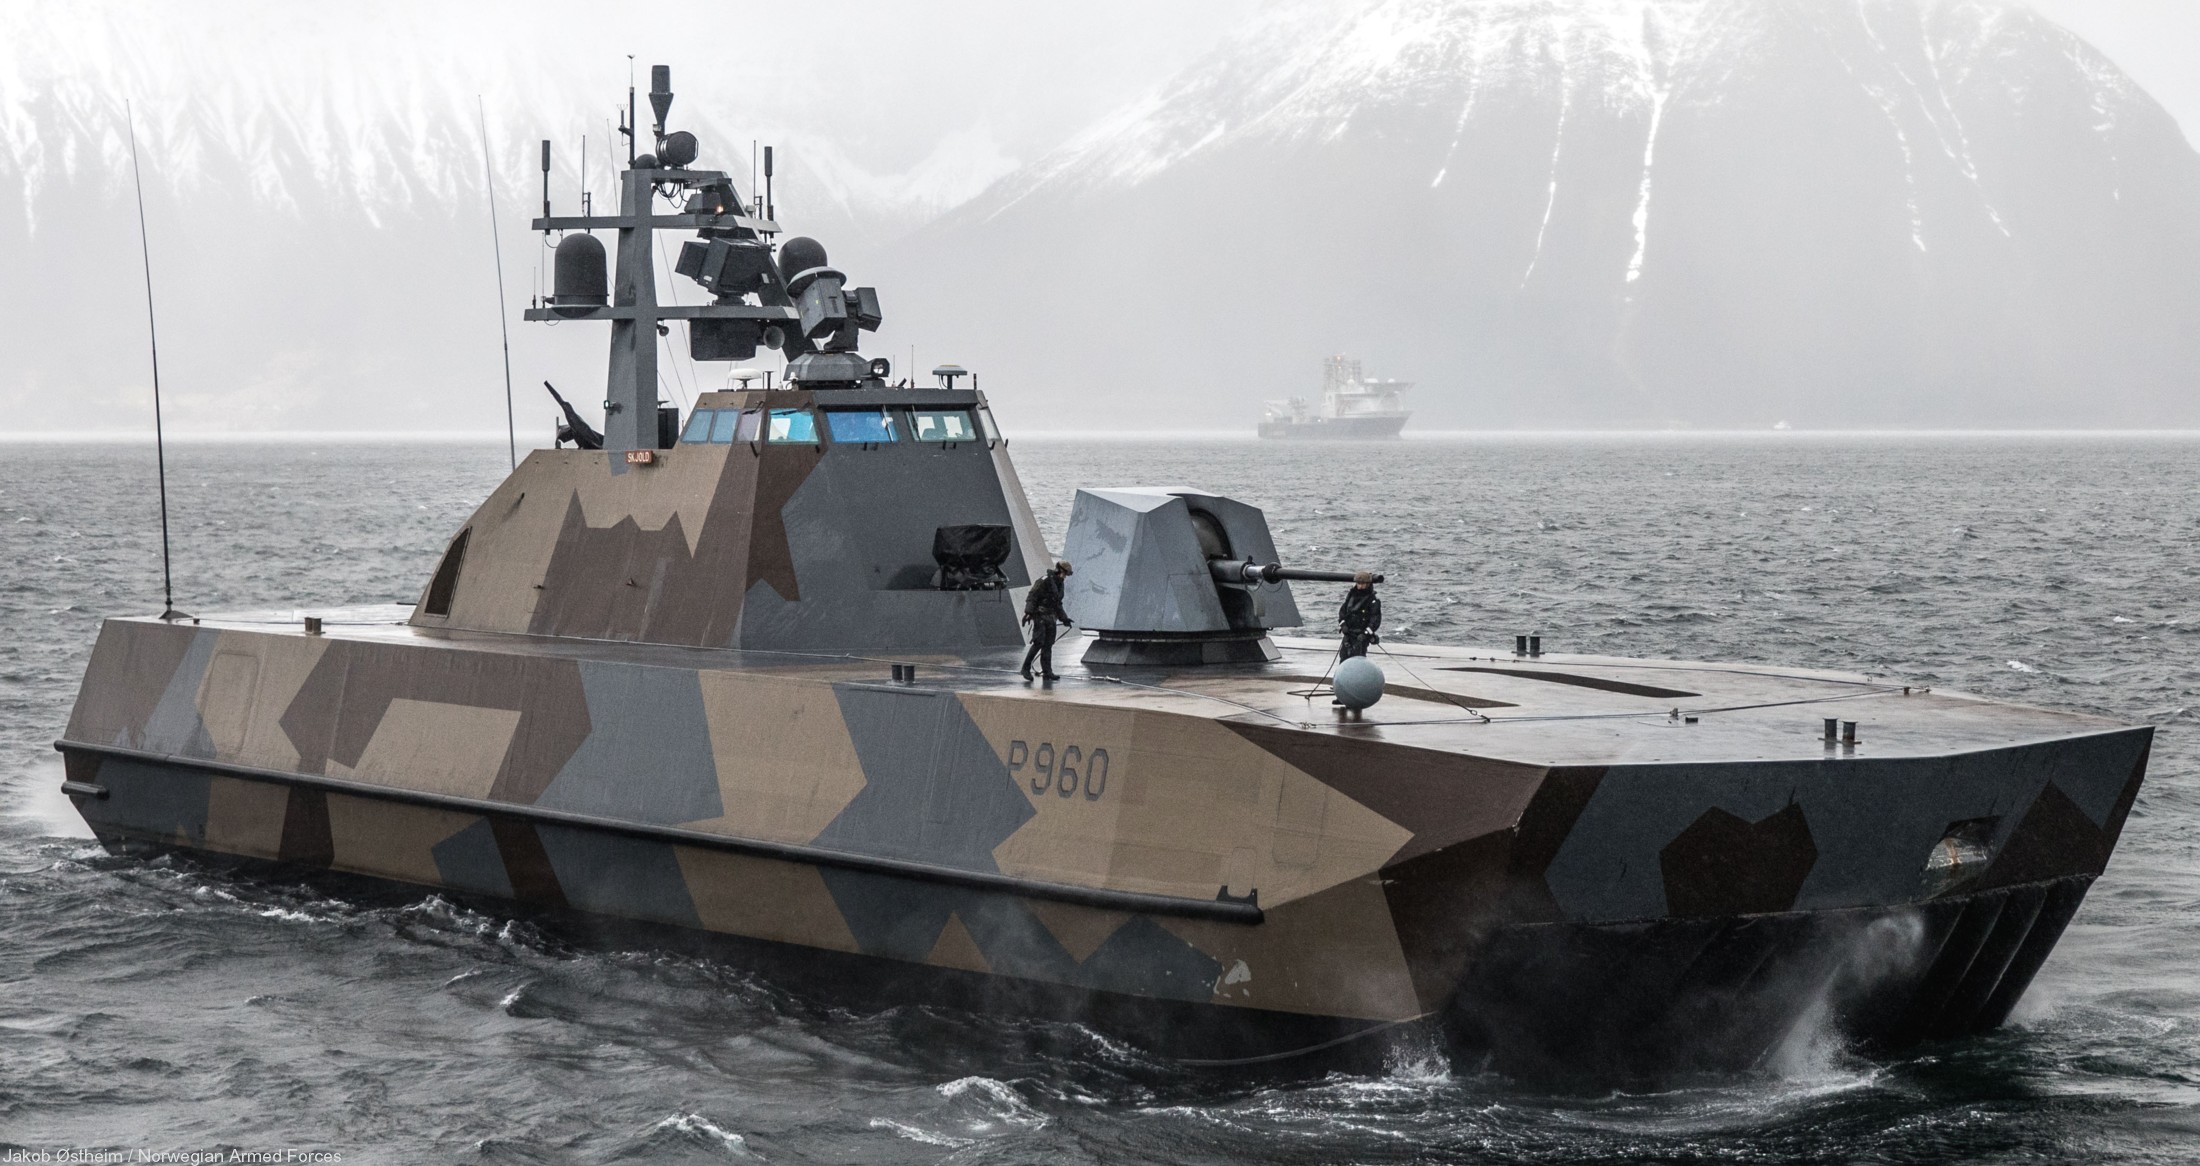 p-960 skjold hnoms knm corvette royal norwegian navy sjoforsvaret 05